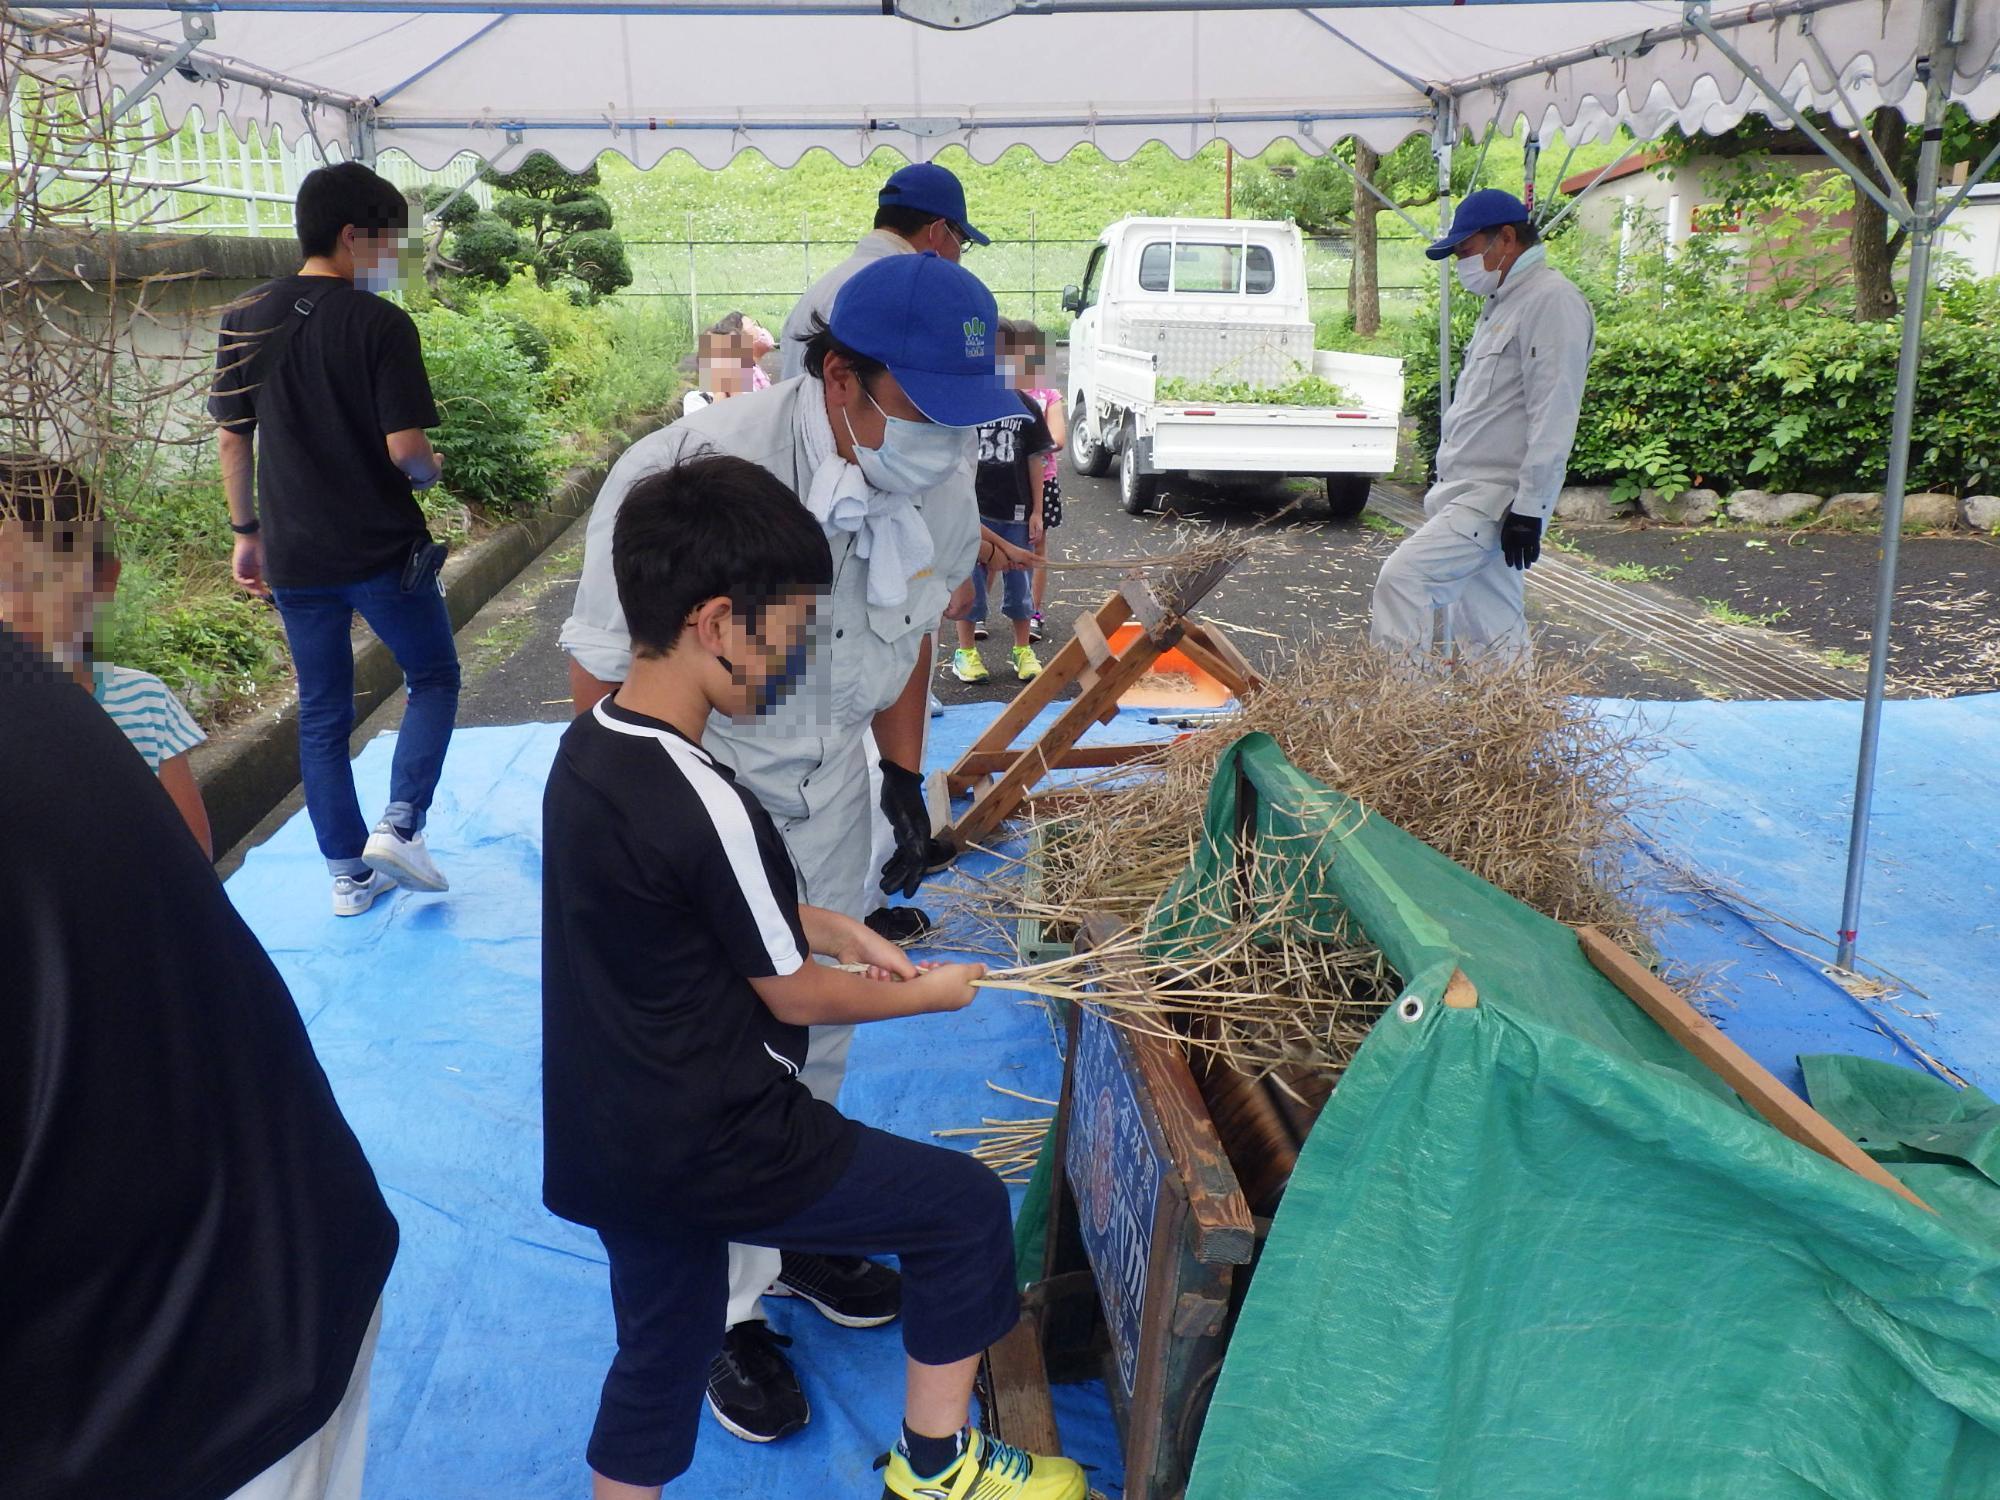 足踏脱穀機を使って菜種を収穫している小学生